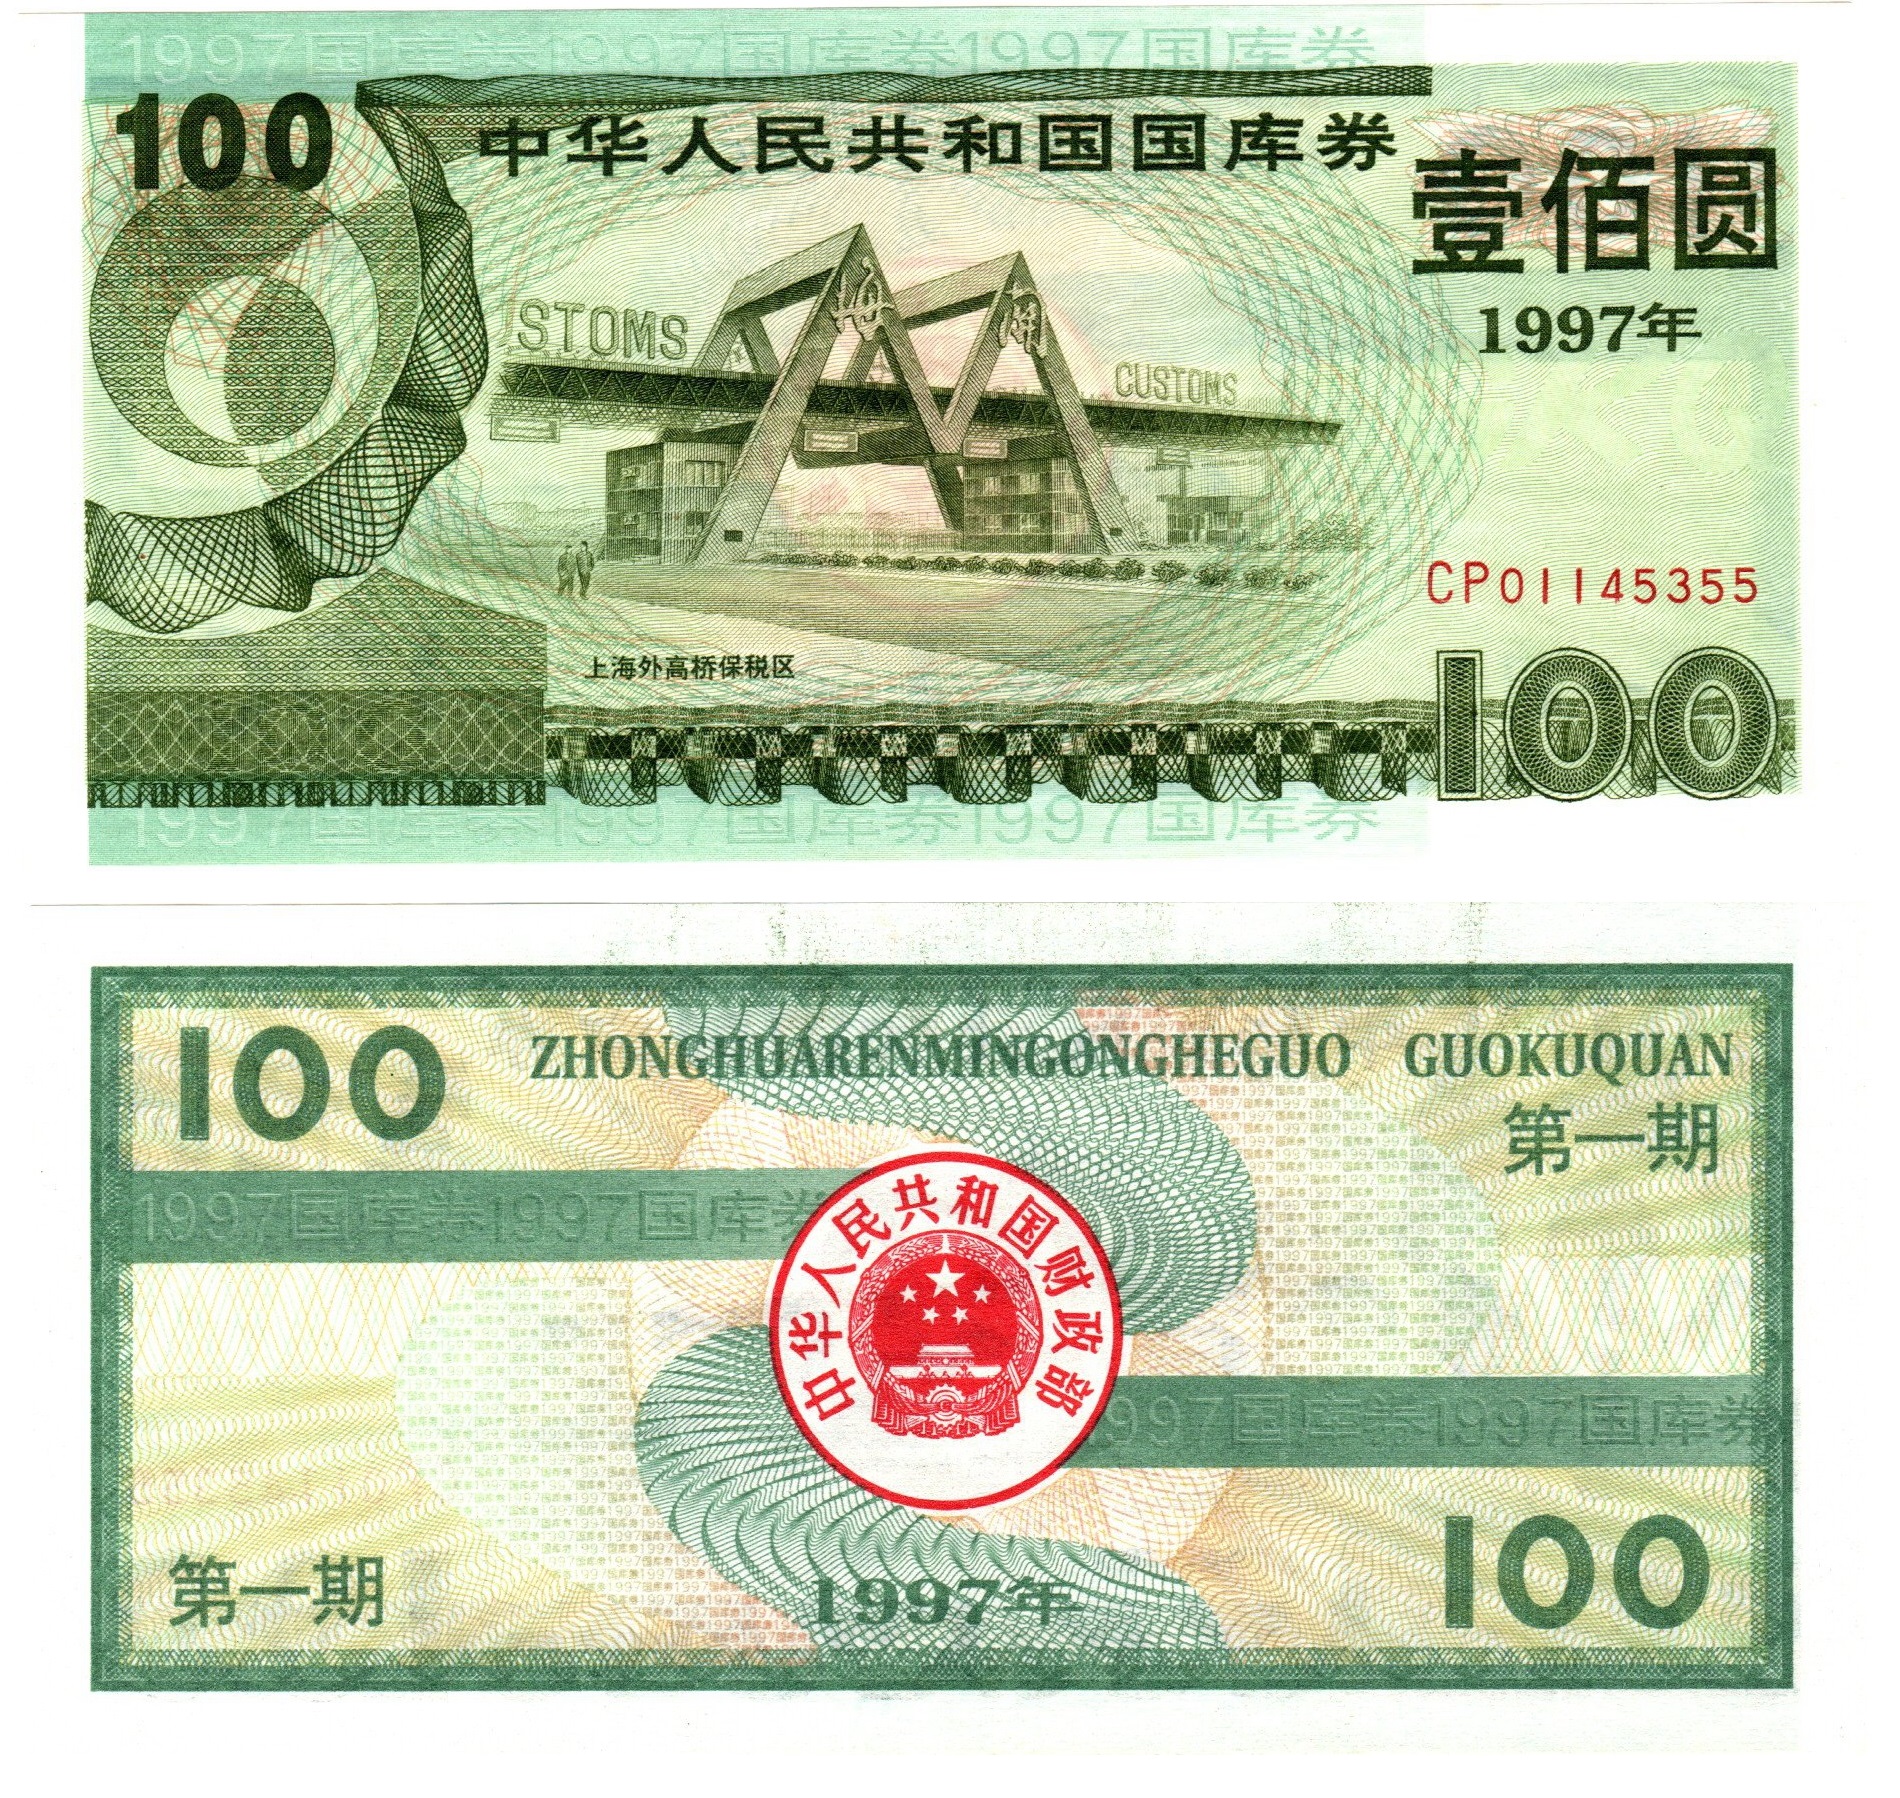 B7250, Treasury Bond of P.R.China, 9.18% Loan, 100 Yuan (Dollars) 1997